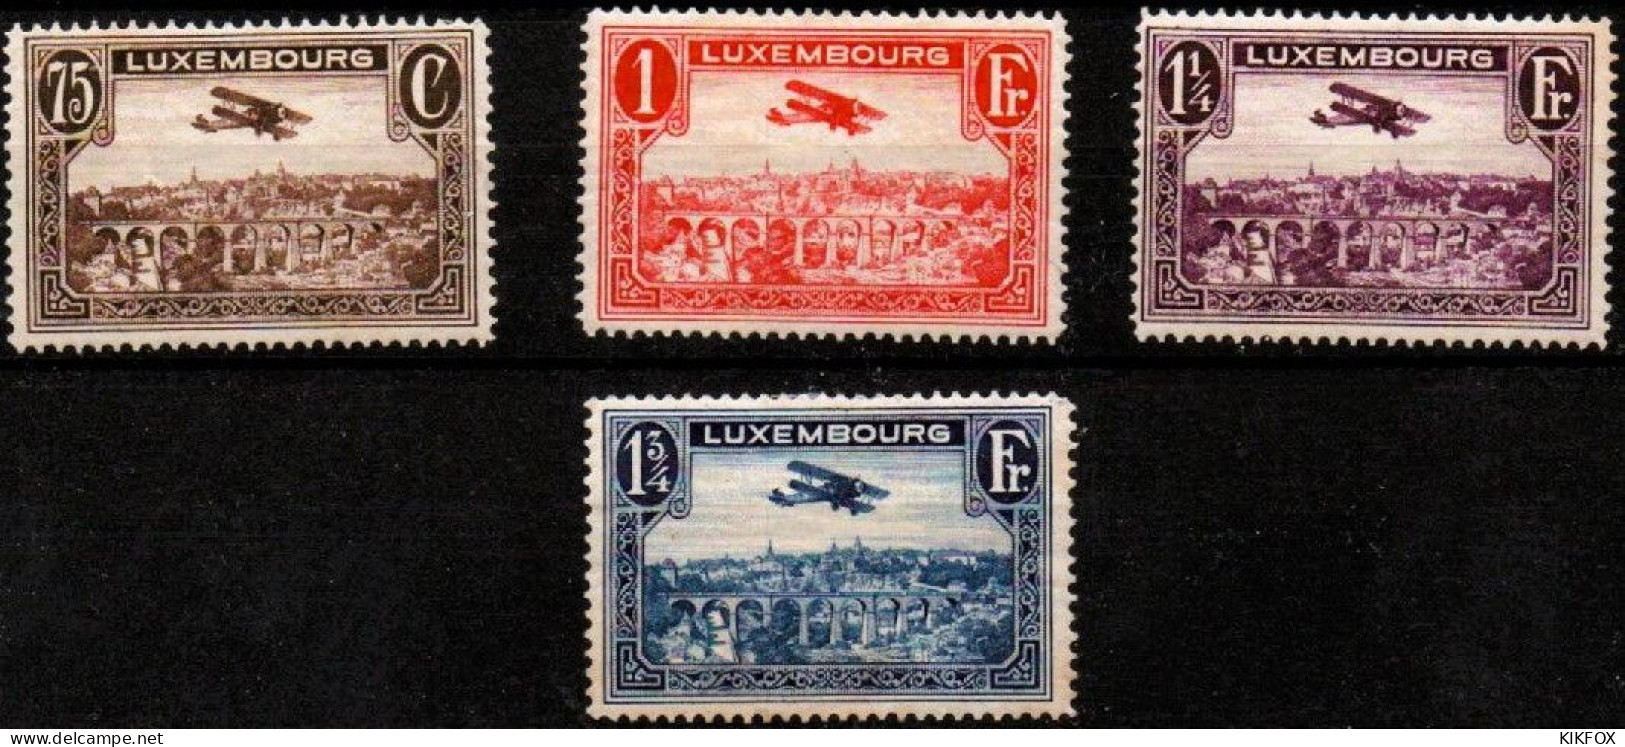 LUXEMBOURG, LUXEMBURG 1931 Mi 234 - 237 , PA 1 - 4  Flugpost , BREGUET-DOPPELDECKER, UNGEBRAUCHT, CHARNIERES * - Ungebraucht